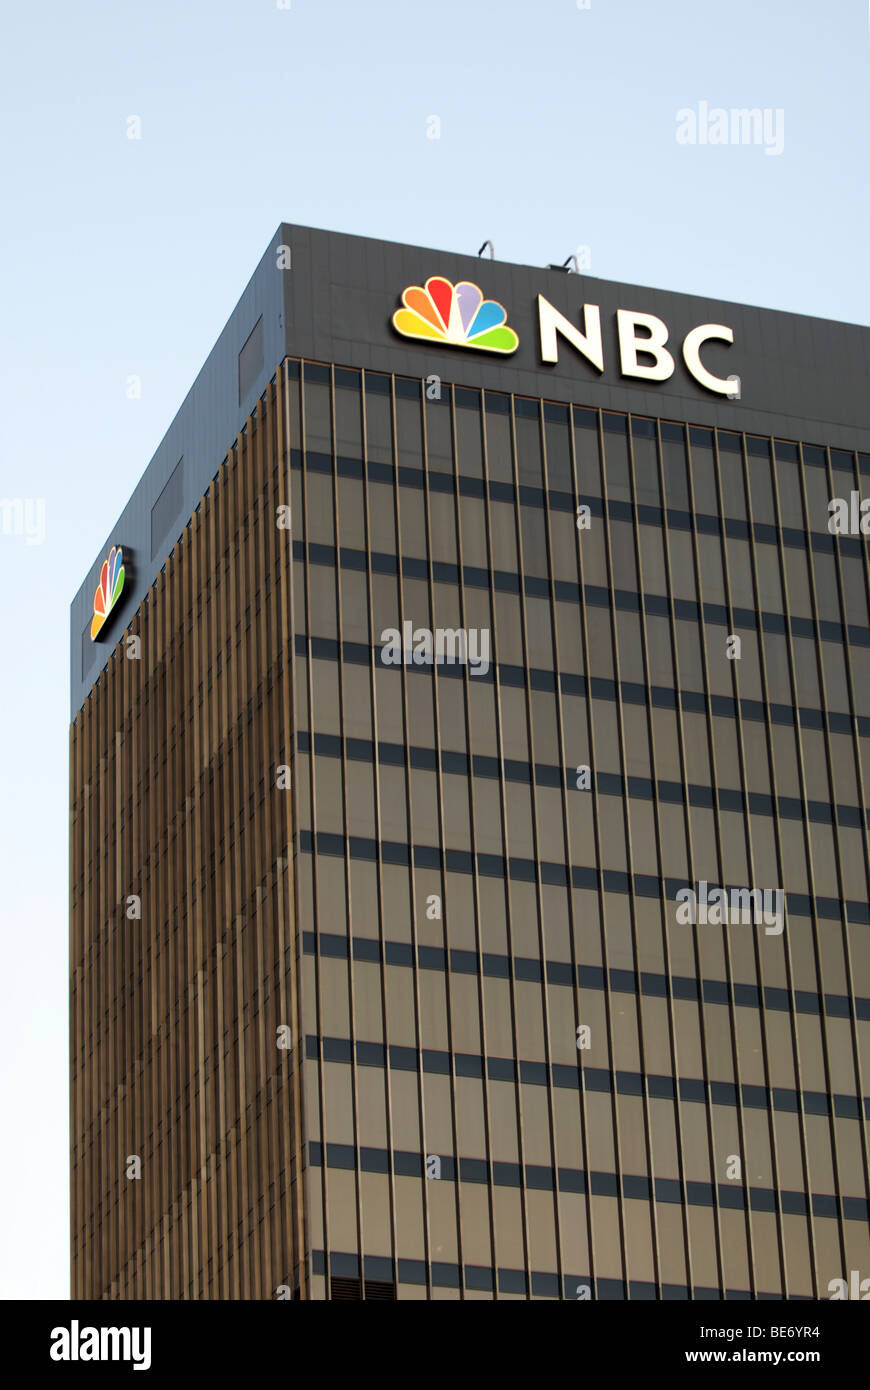 NBC Stock Photo